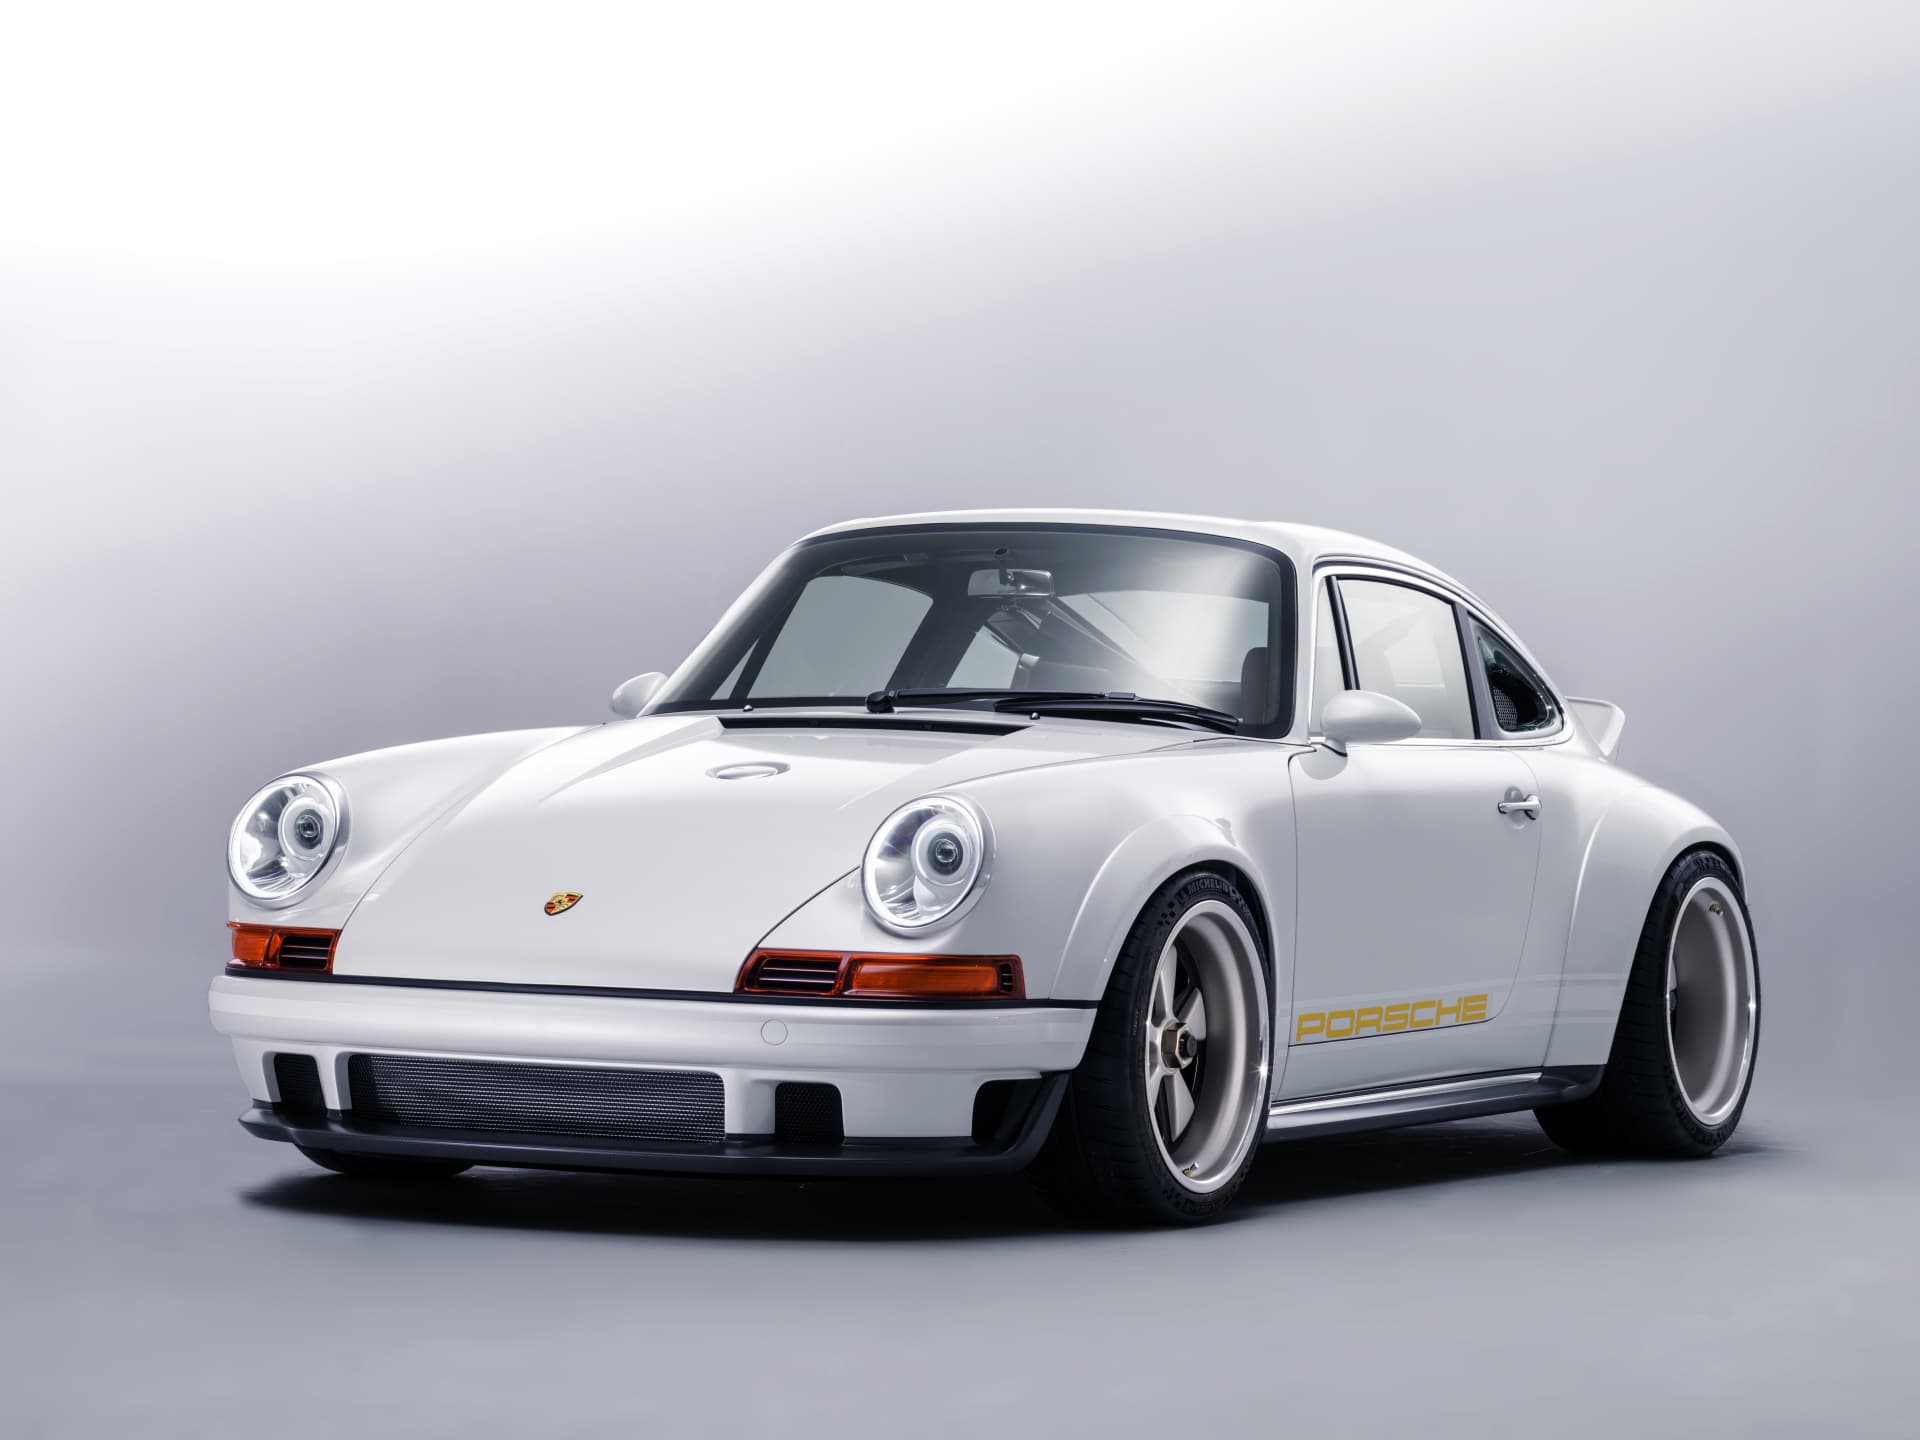 Singer 911 Williams Porsche 9